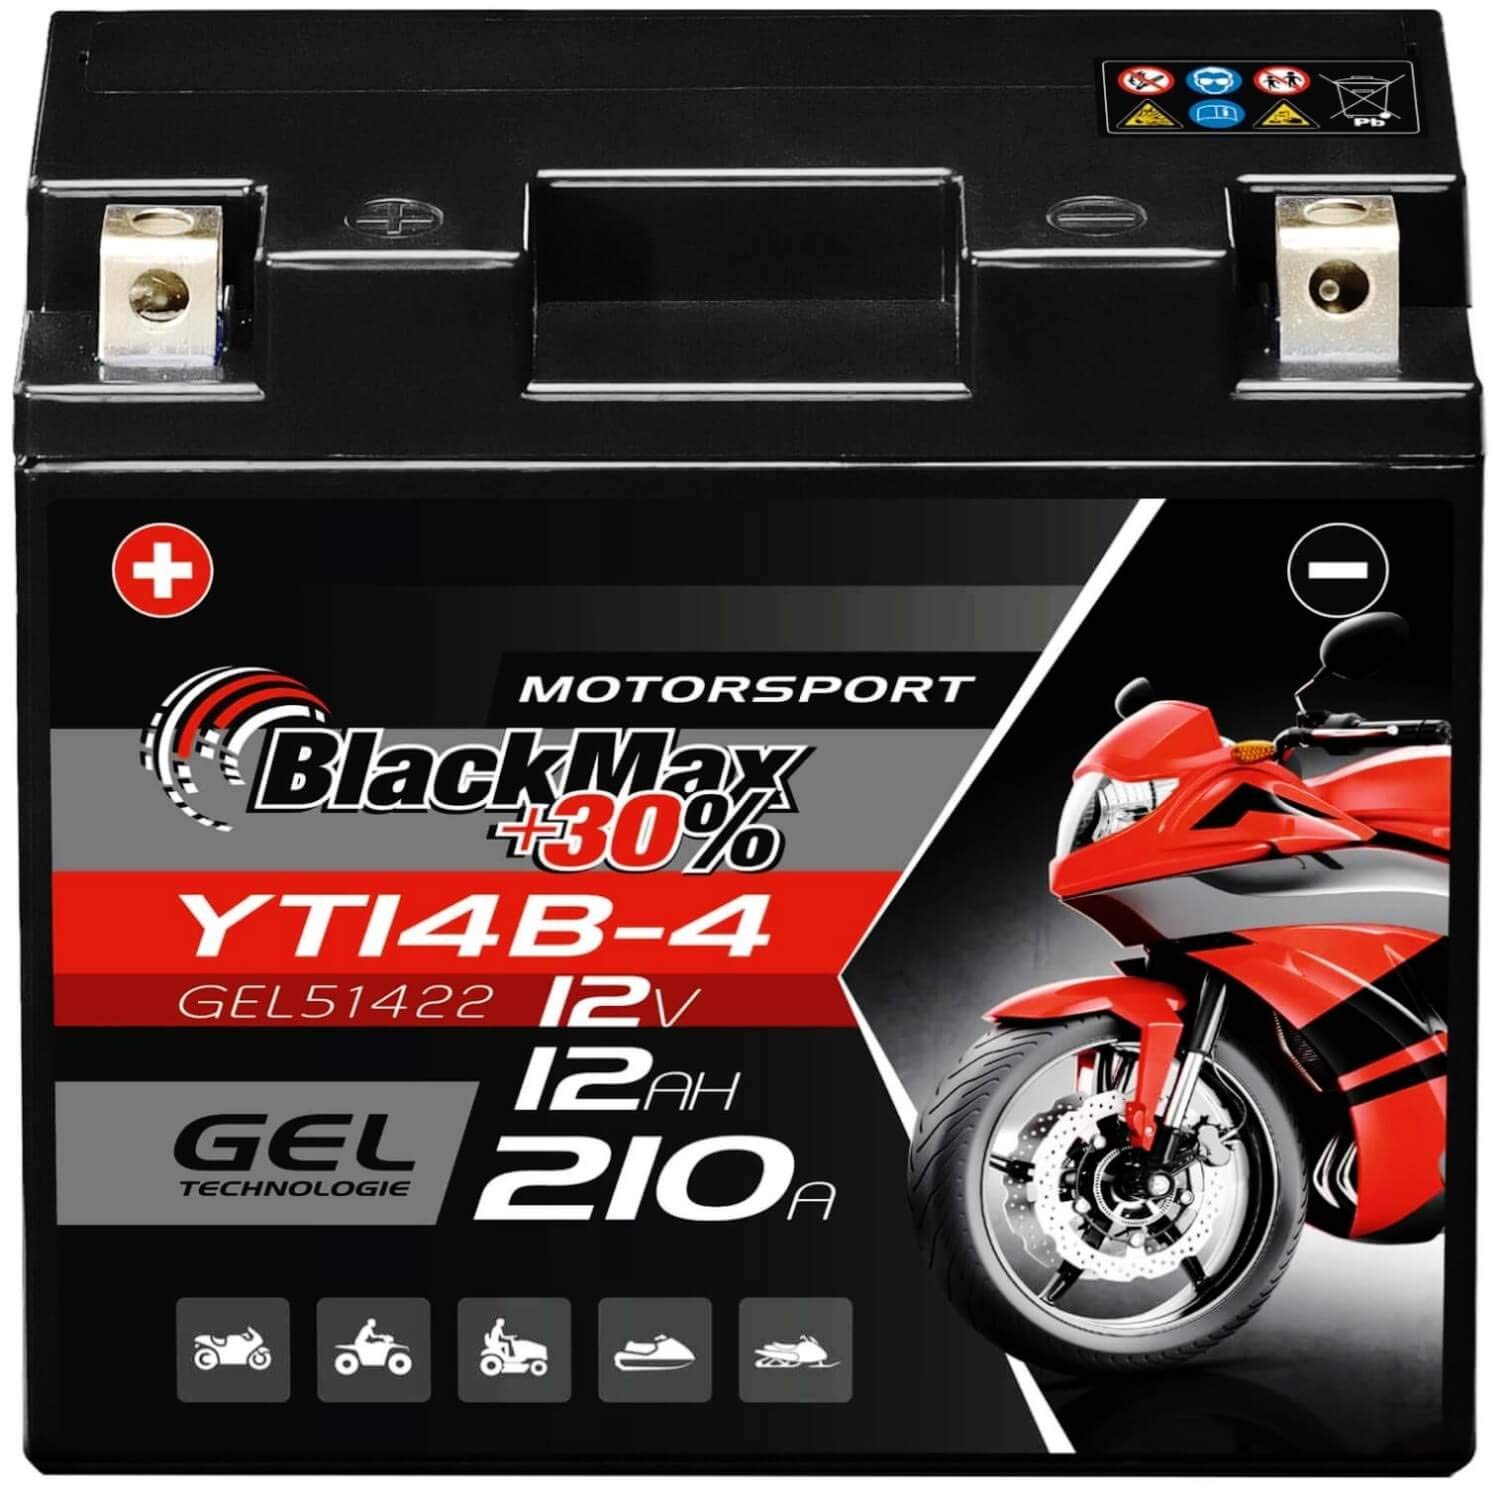 BlackMax YT14B-4 GEL Motorradbatterie 12V 12Ah Batterie 51422